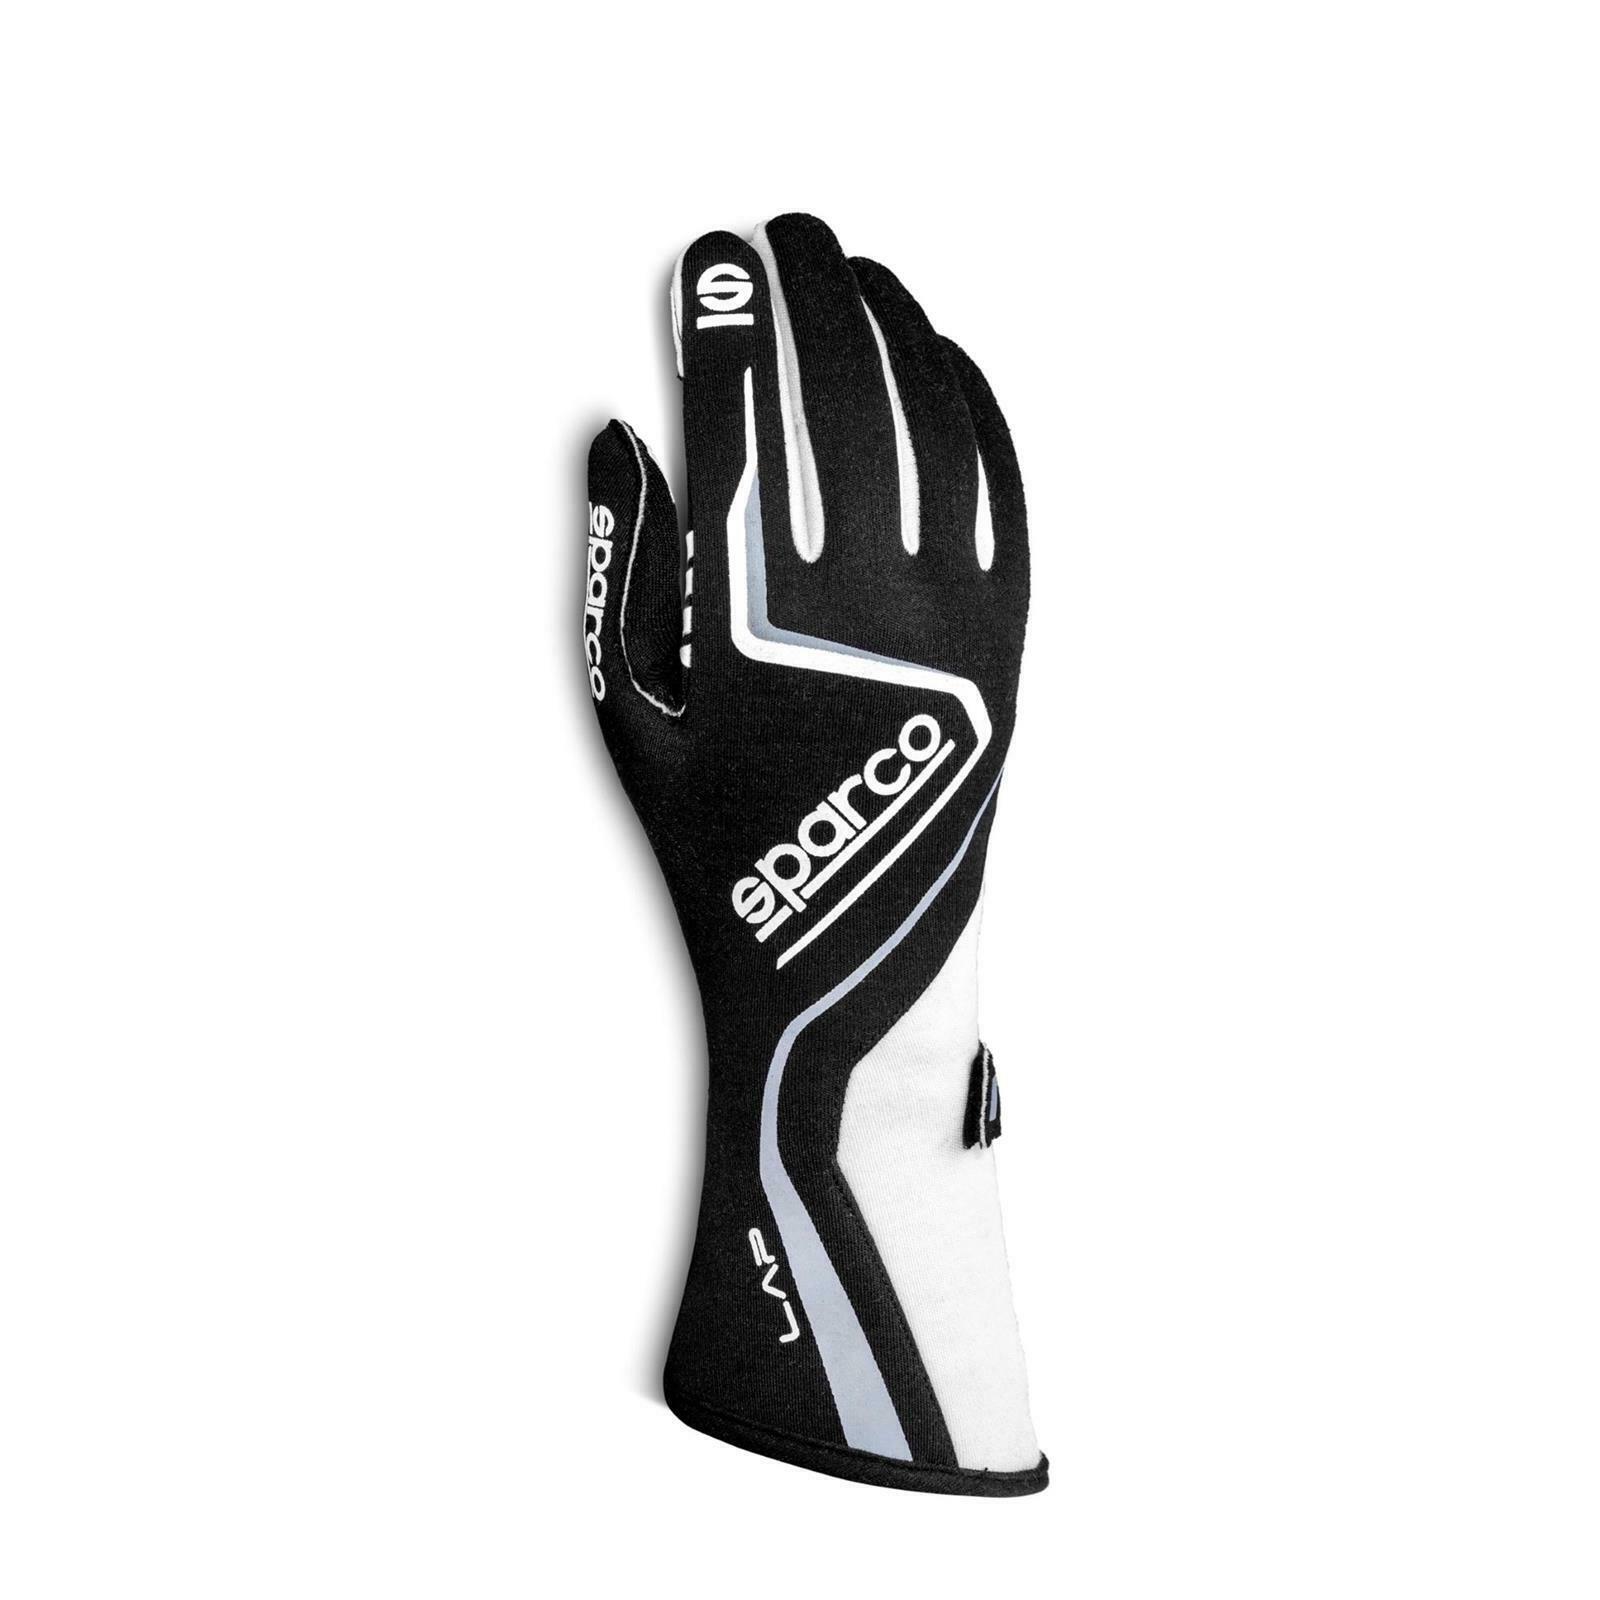 Sparco 00131512nrbi Lap Sfi 5 Racing Gloves, Black/black, X-large